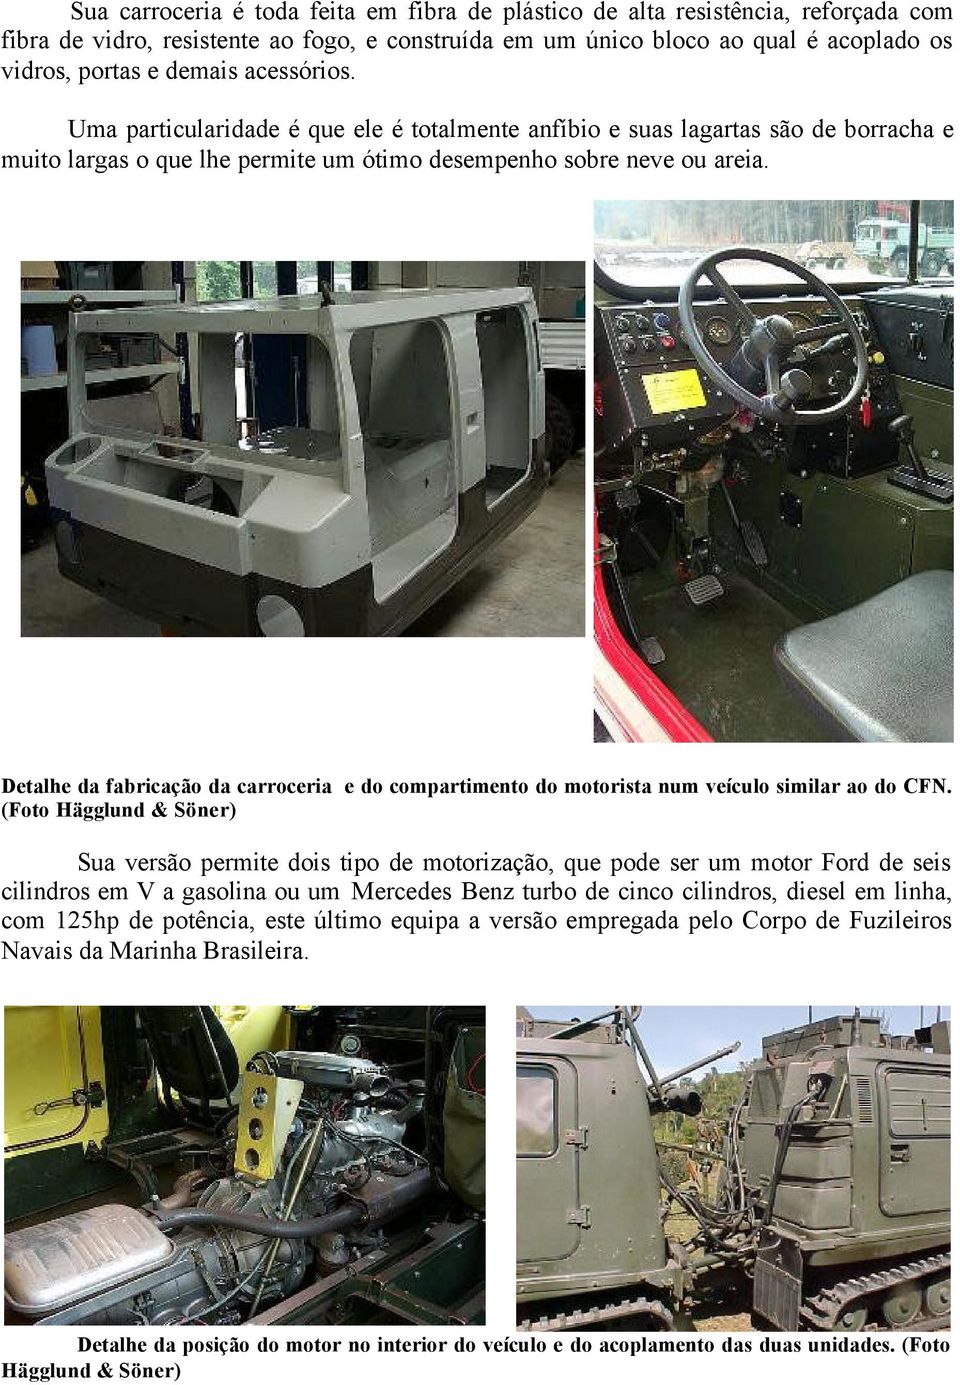 Detalhe da fabricação da carroceria e do compartimento do motorista num veículo similar ao do CFN.